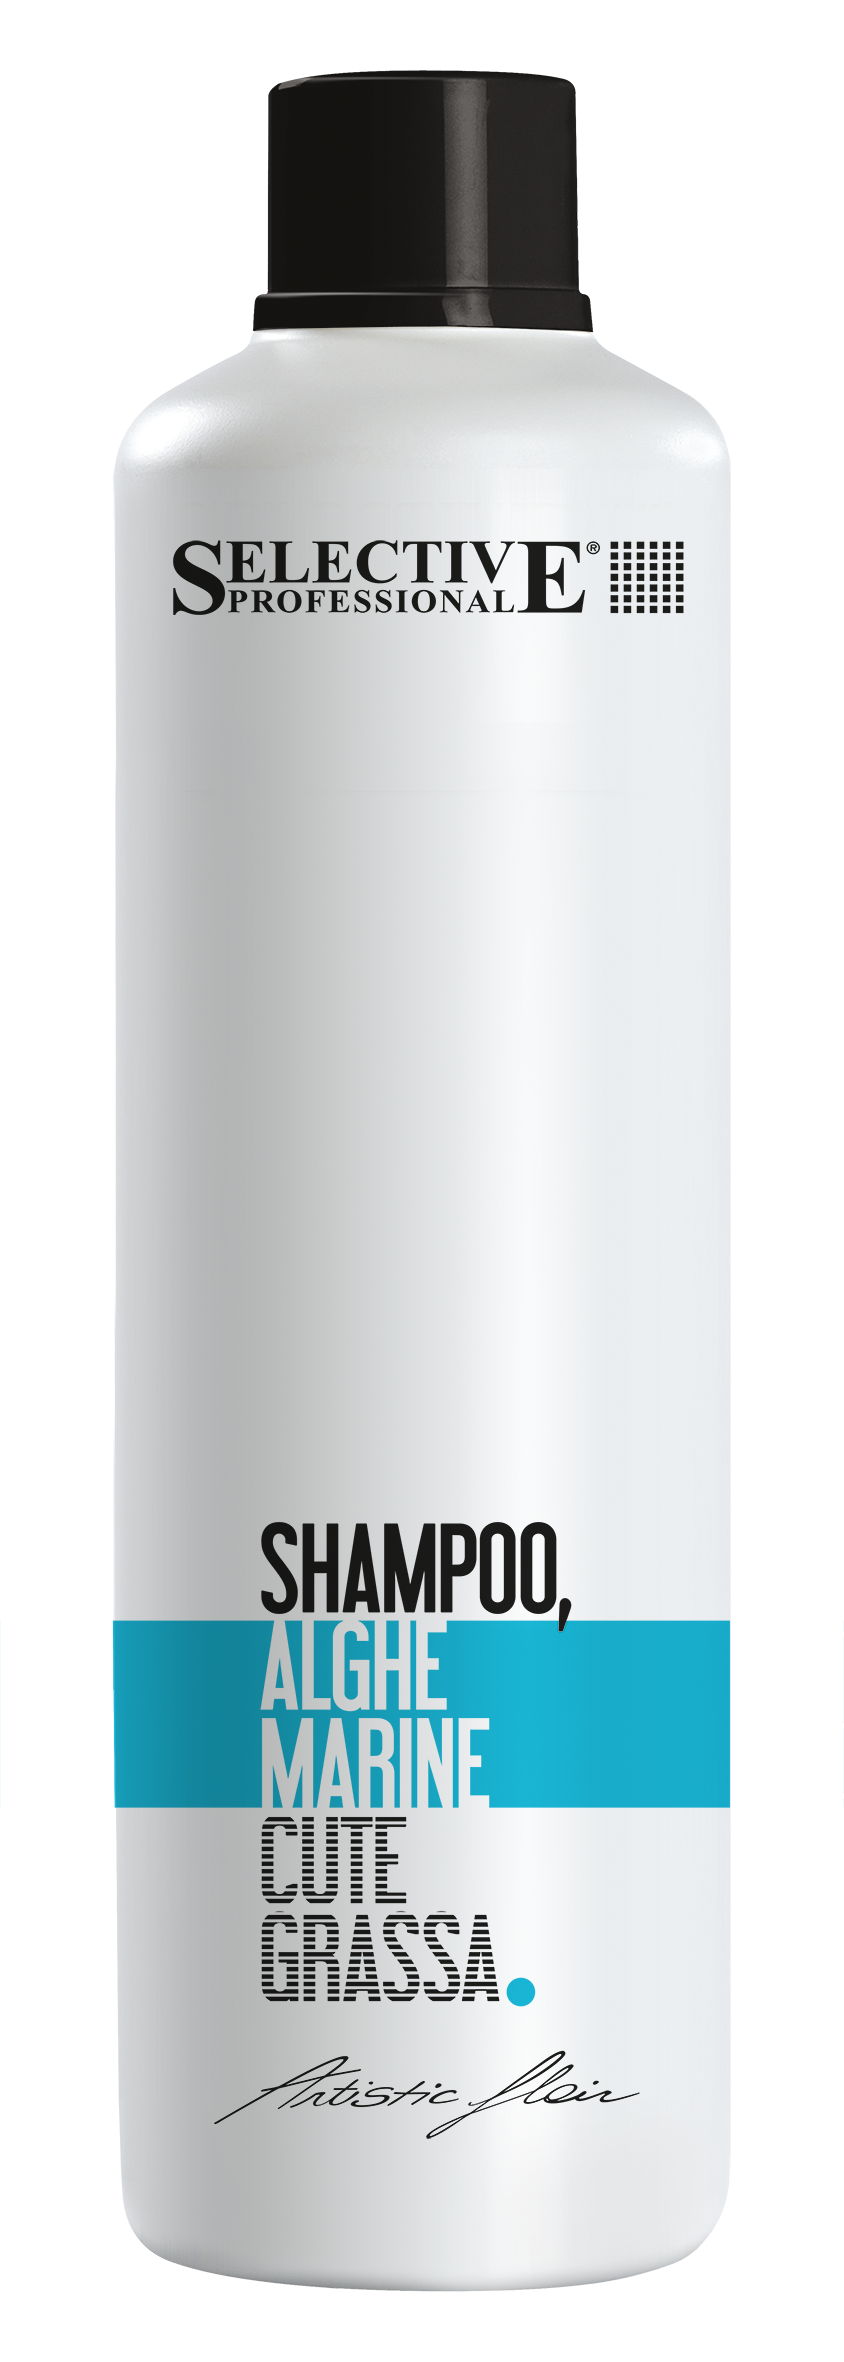 Шампуни для волос:  SELECTIVE PROFESSIONAL -  Шампунь Морские водоросли для жирной кожи головы ALGHE MARINE  (1000 мл)